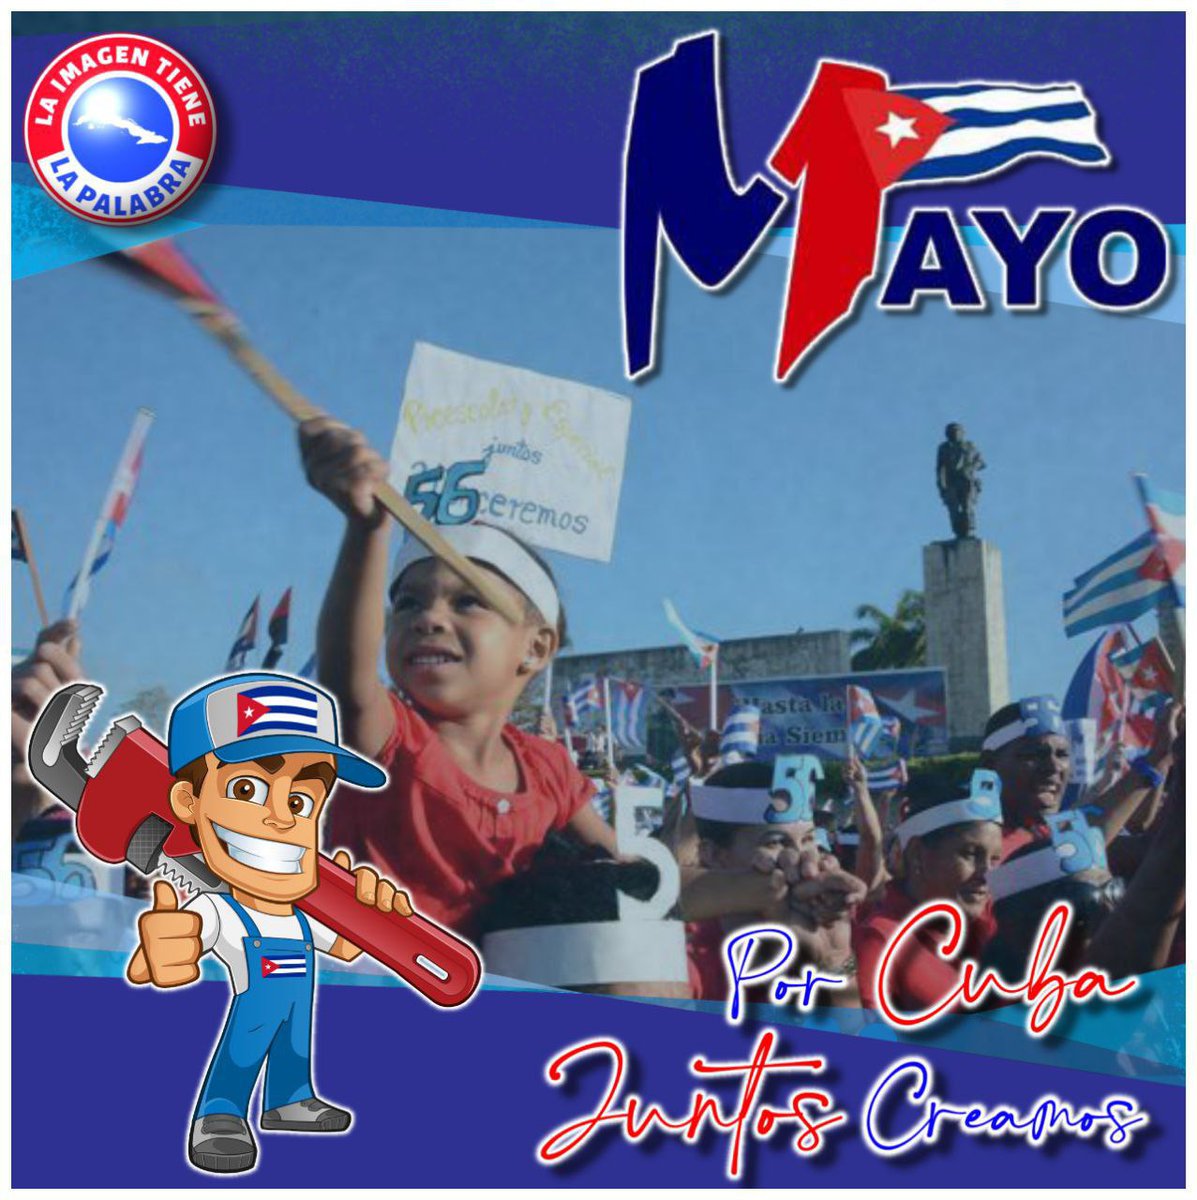 Listos todos para con júbilo y fé en la victoria celebrar esta fiesta de los Trabajadores. Viva el 1ro de Mayo. #Cuba